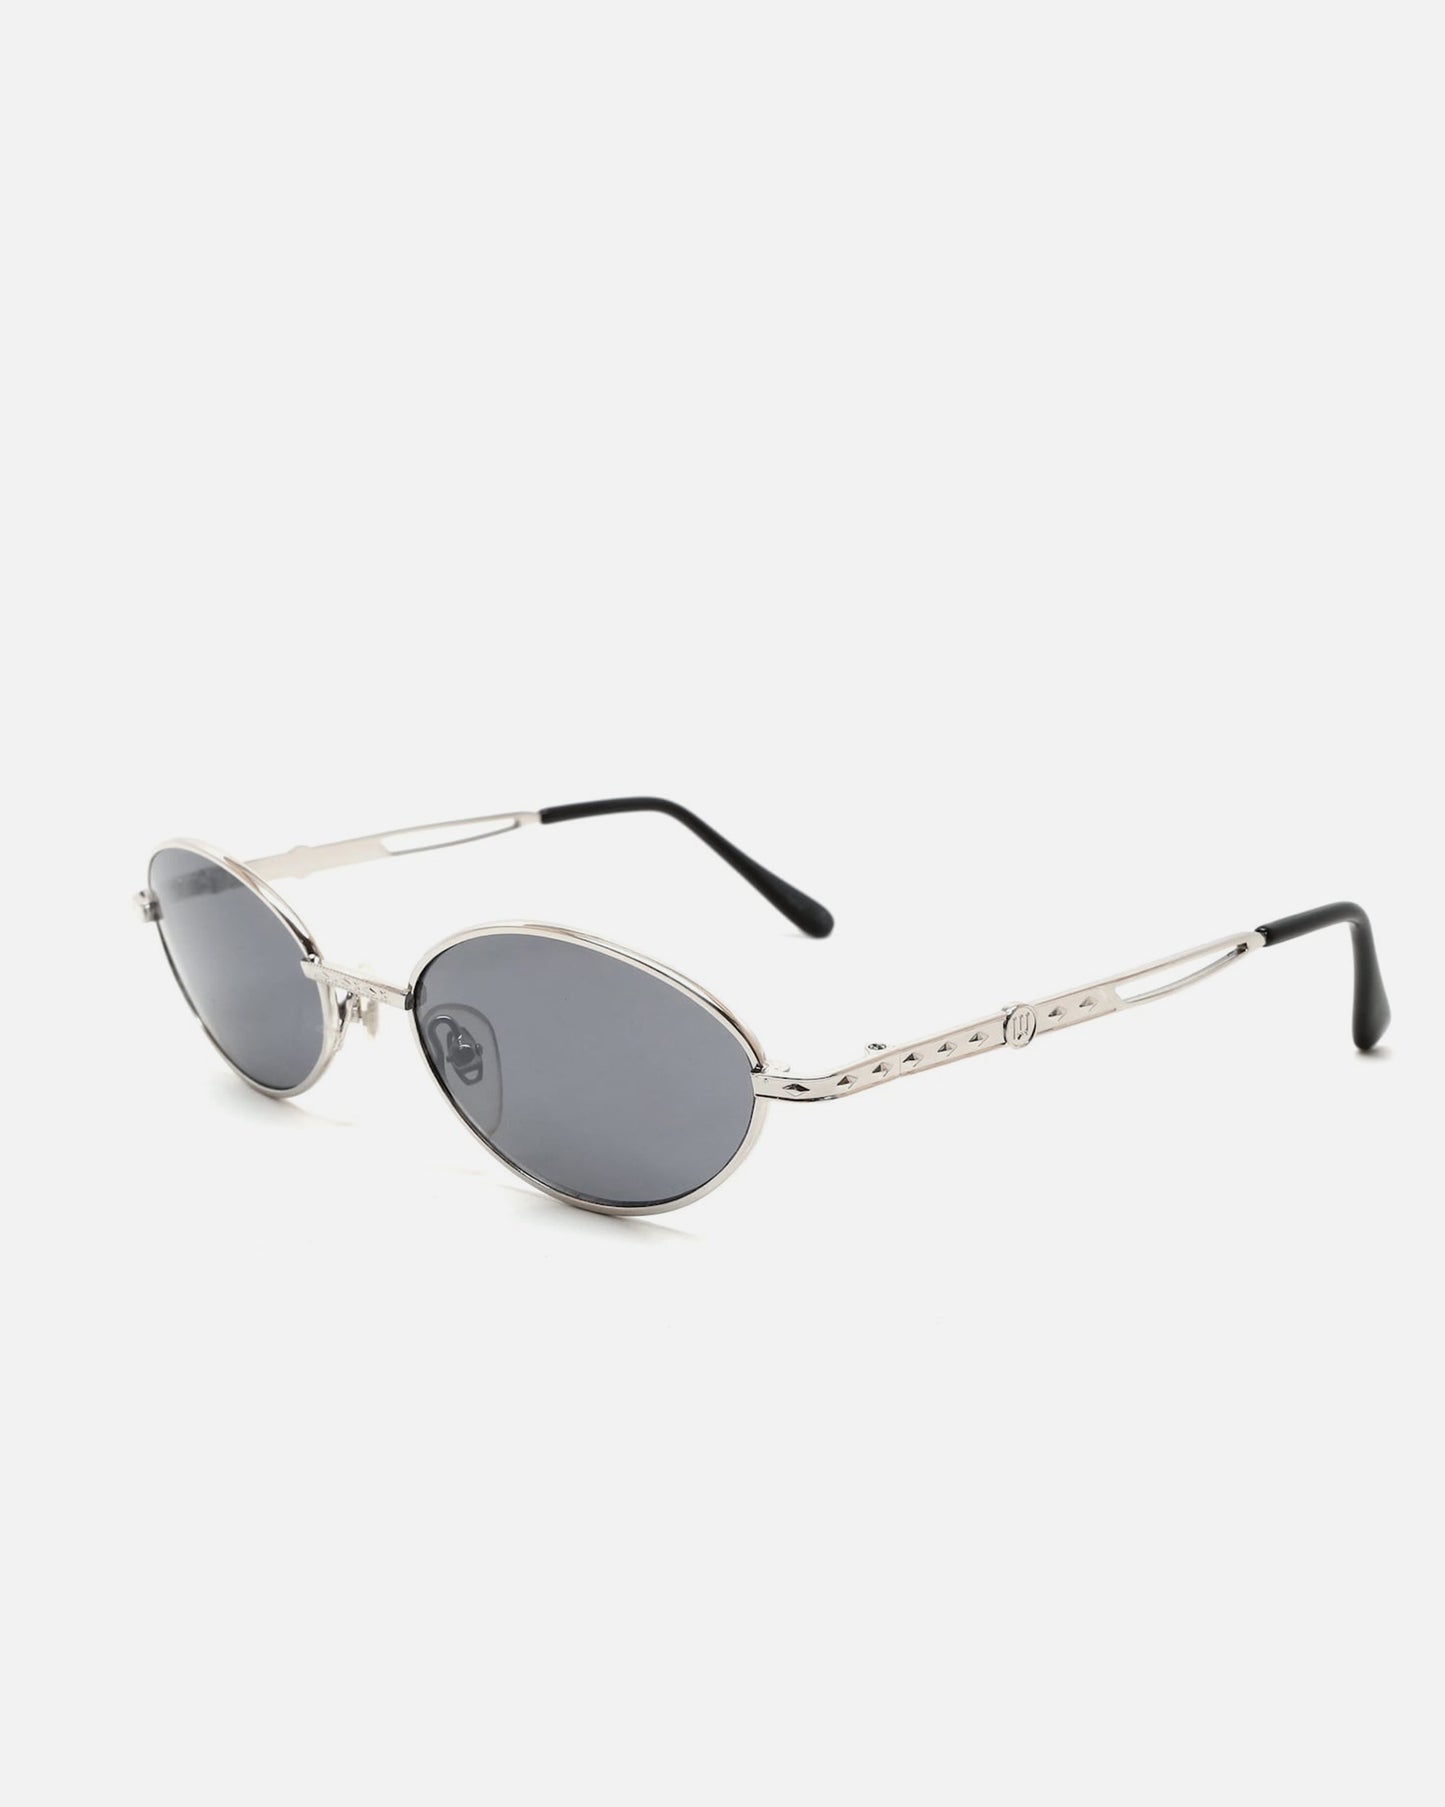 NOS Metal Frame Sunglasses